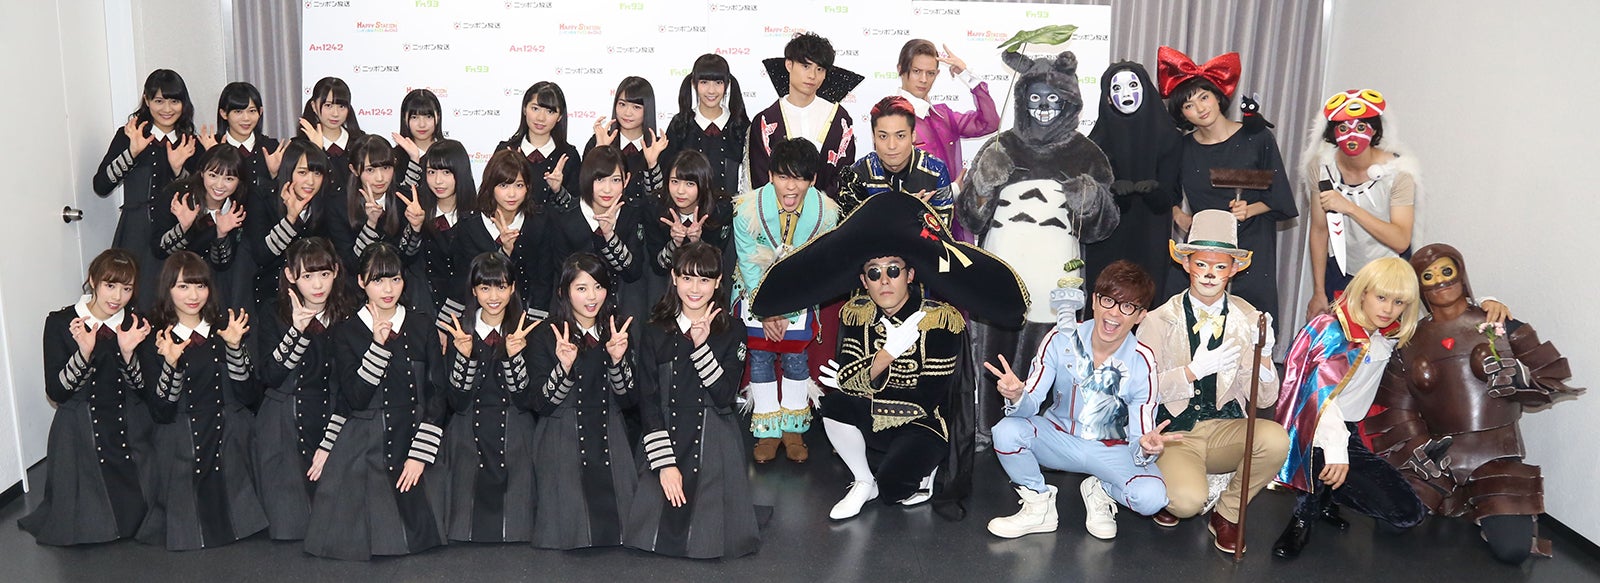 欅坂46 超特急 Radio Fish スペシャル仮装でハロウィンライブ 総勢34名のコラボも セットリスト モデルプレス